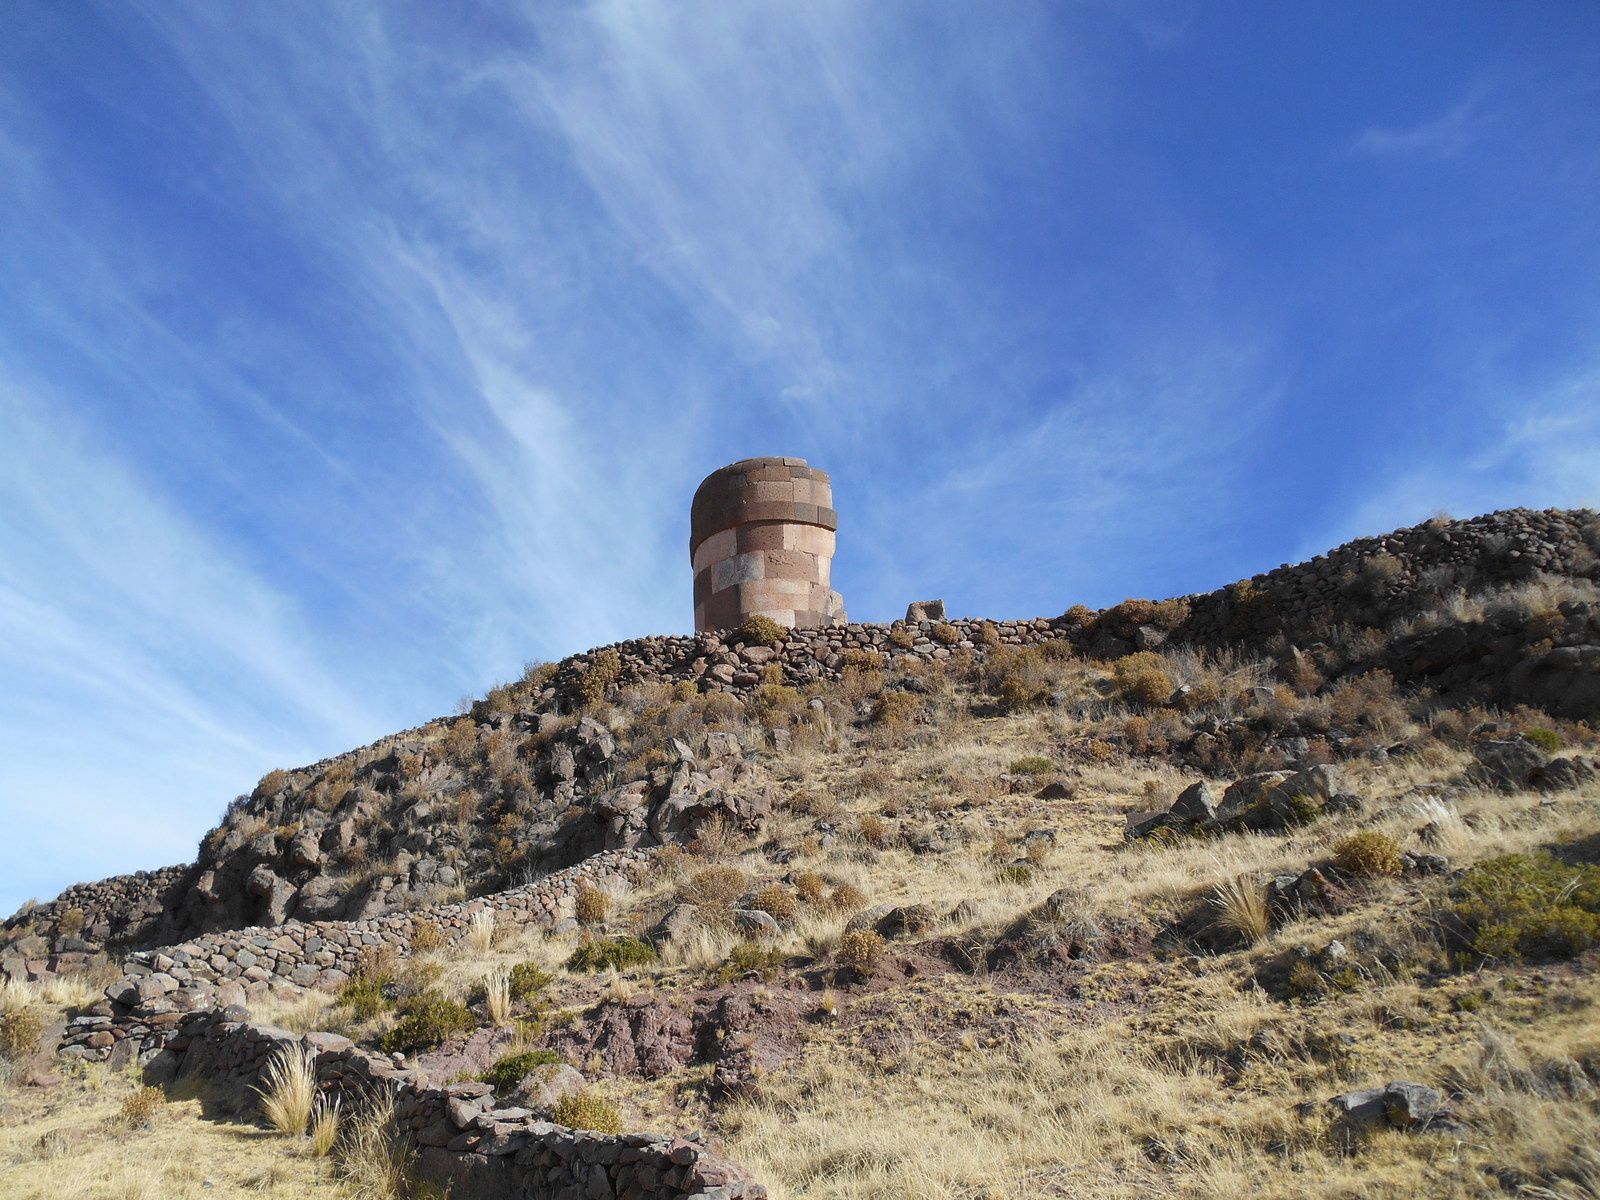 Ces tours funéraires sont appelées "chullpas". Elles avaient été bâties par le peuple Colla qui était une tribu guerrière régnant sur cette partie de l'Altiplano.